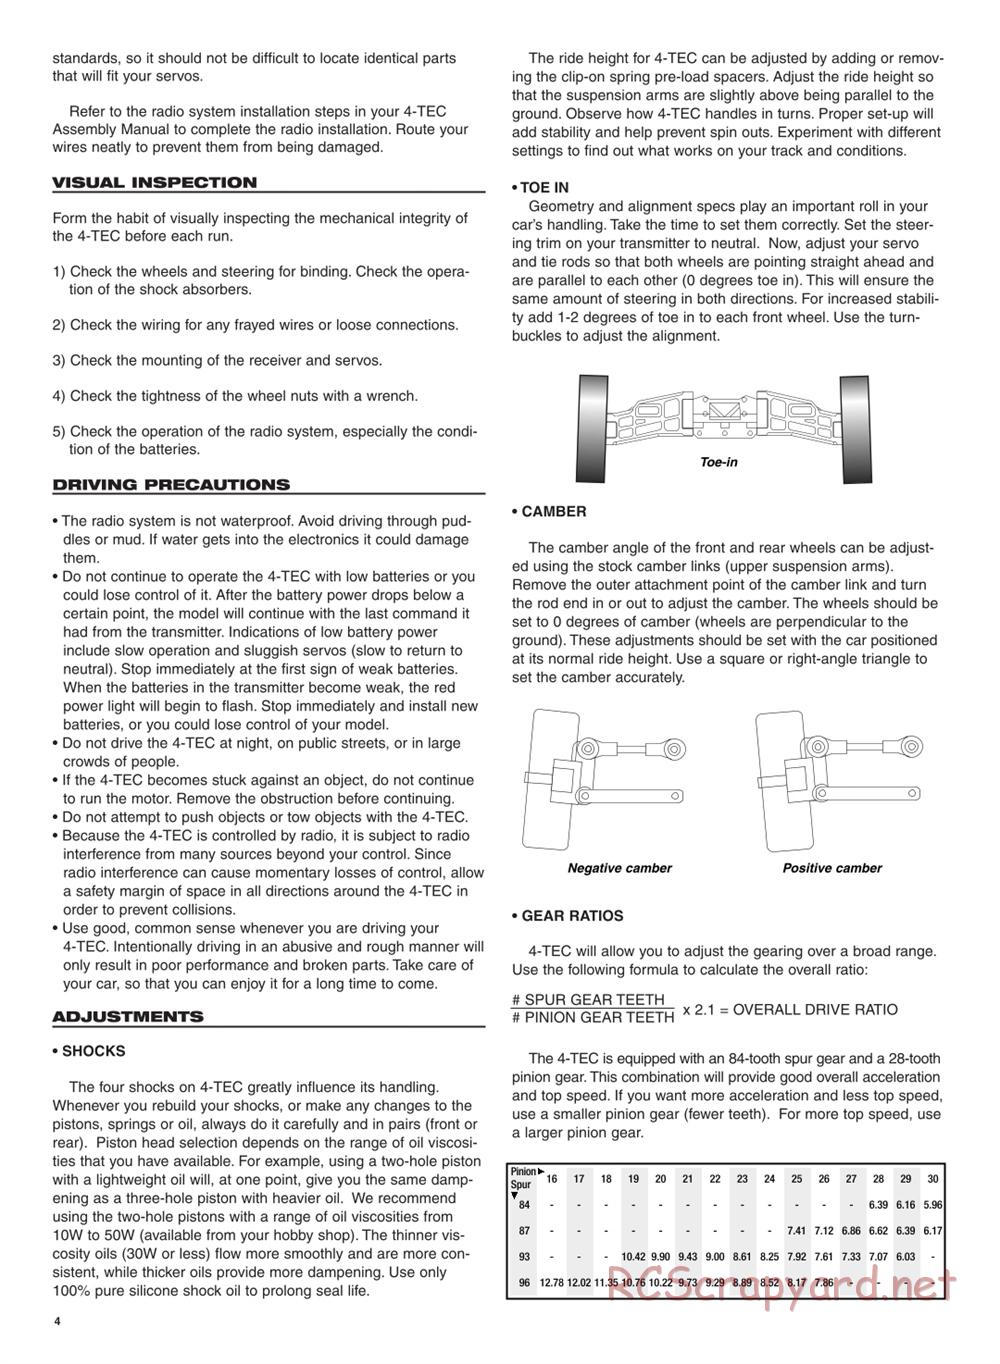 Traxxas - 4-Tec - Manual - Page 4